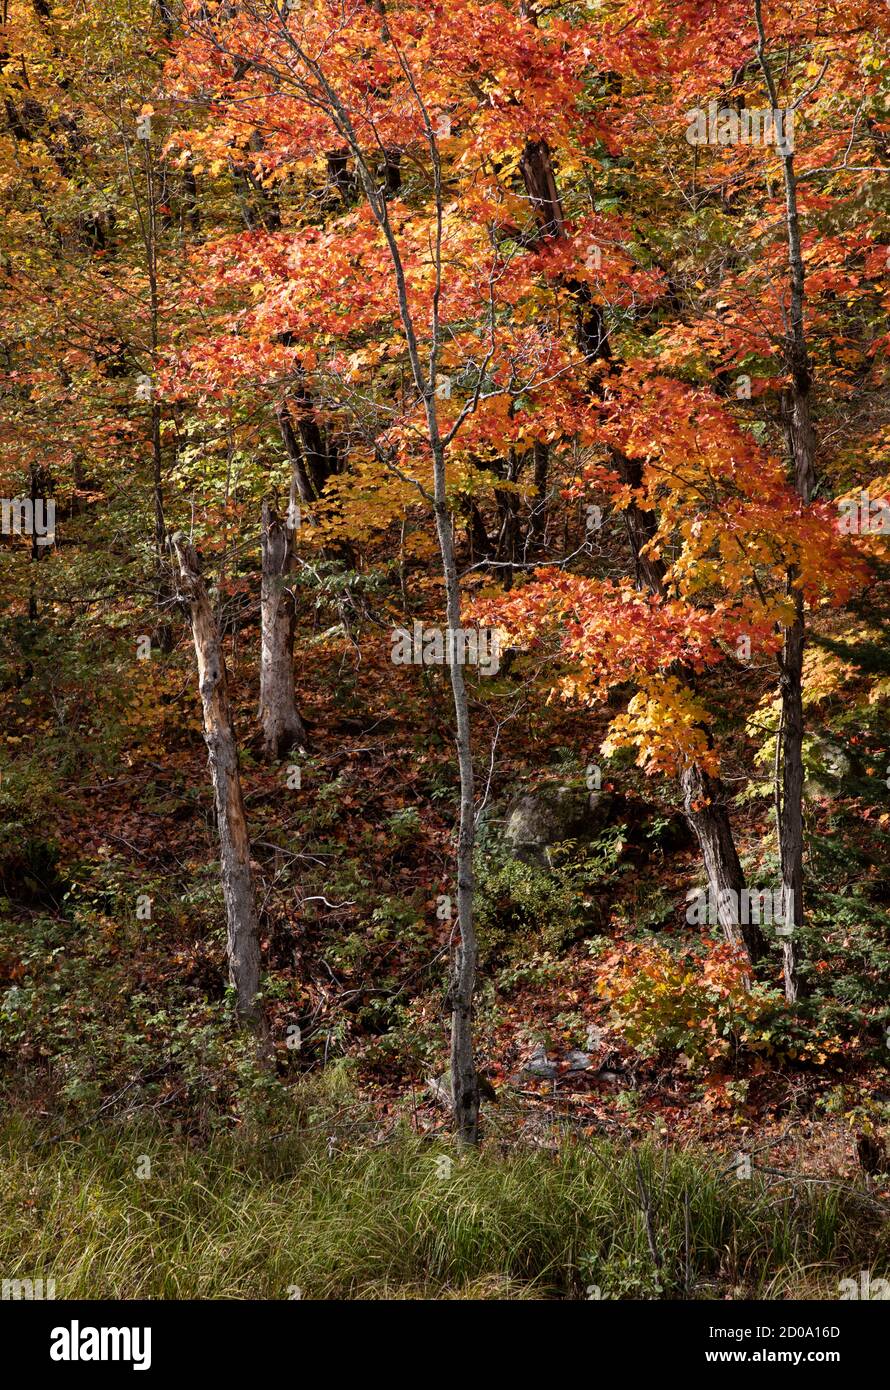 couleurs et lignes dans une forêt en automne Banque D'Images